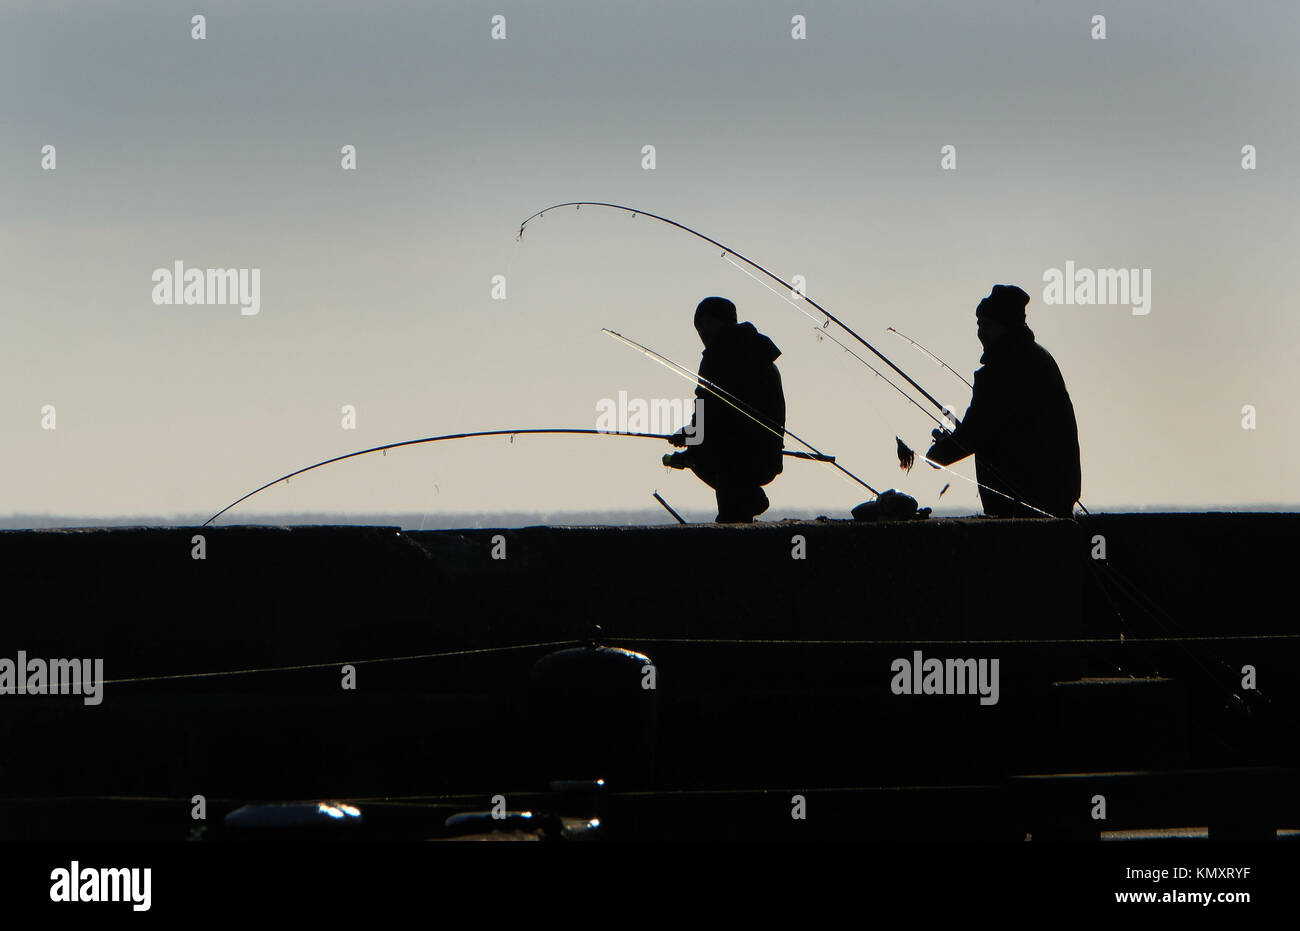 Deux hommes pêche en mer à partir de la station pier en silhouette. Banque D'Images